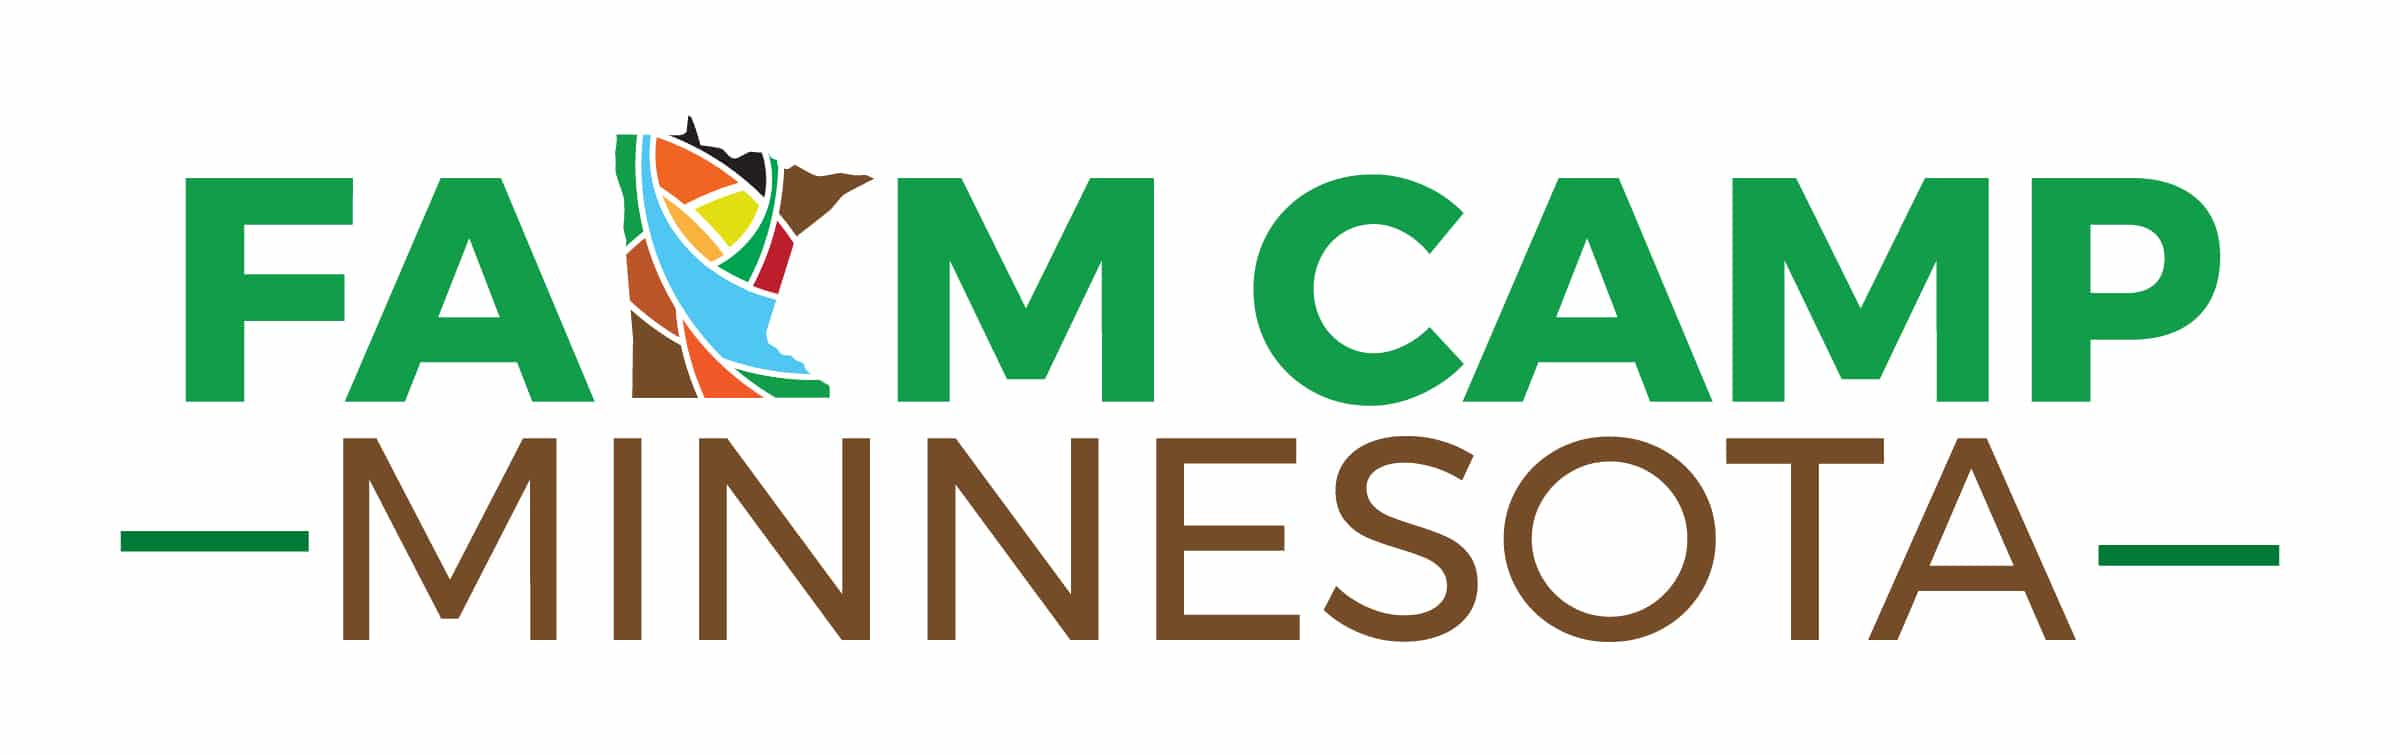 Farm Camp Minnesota Color Logo